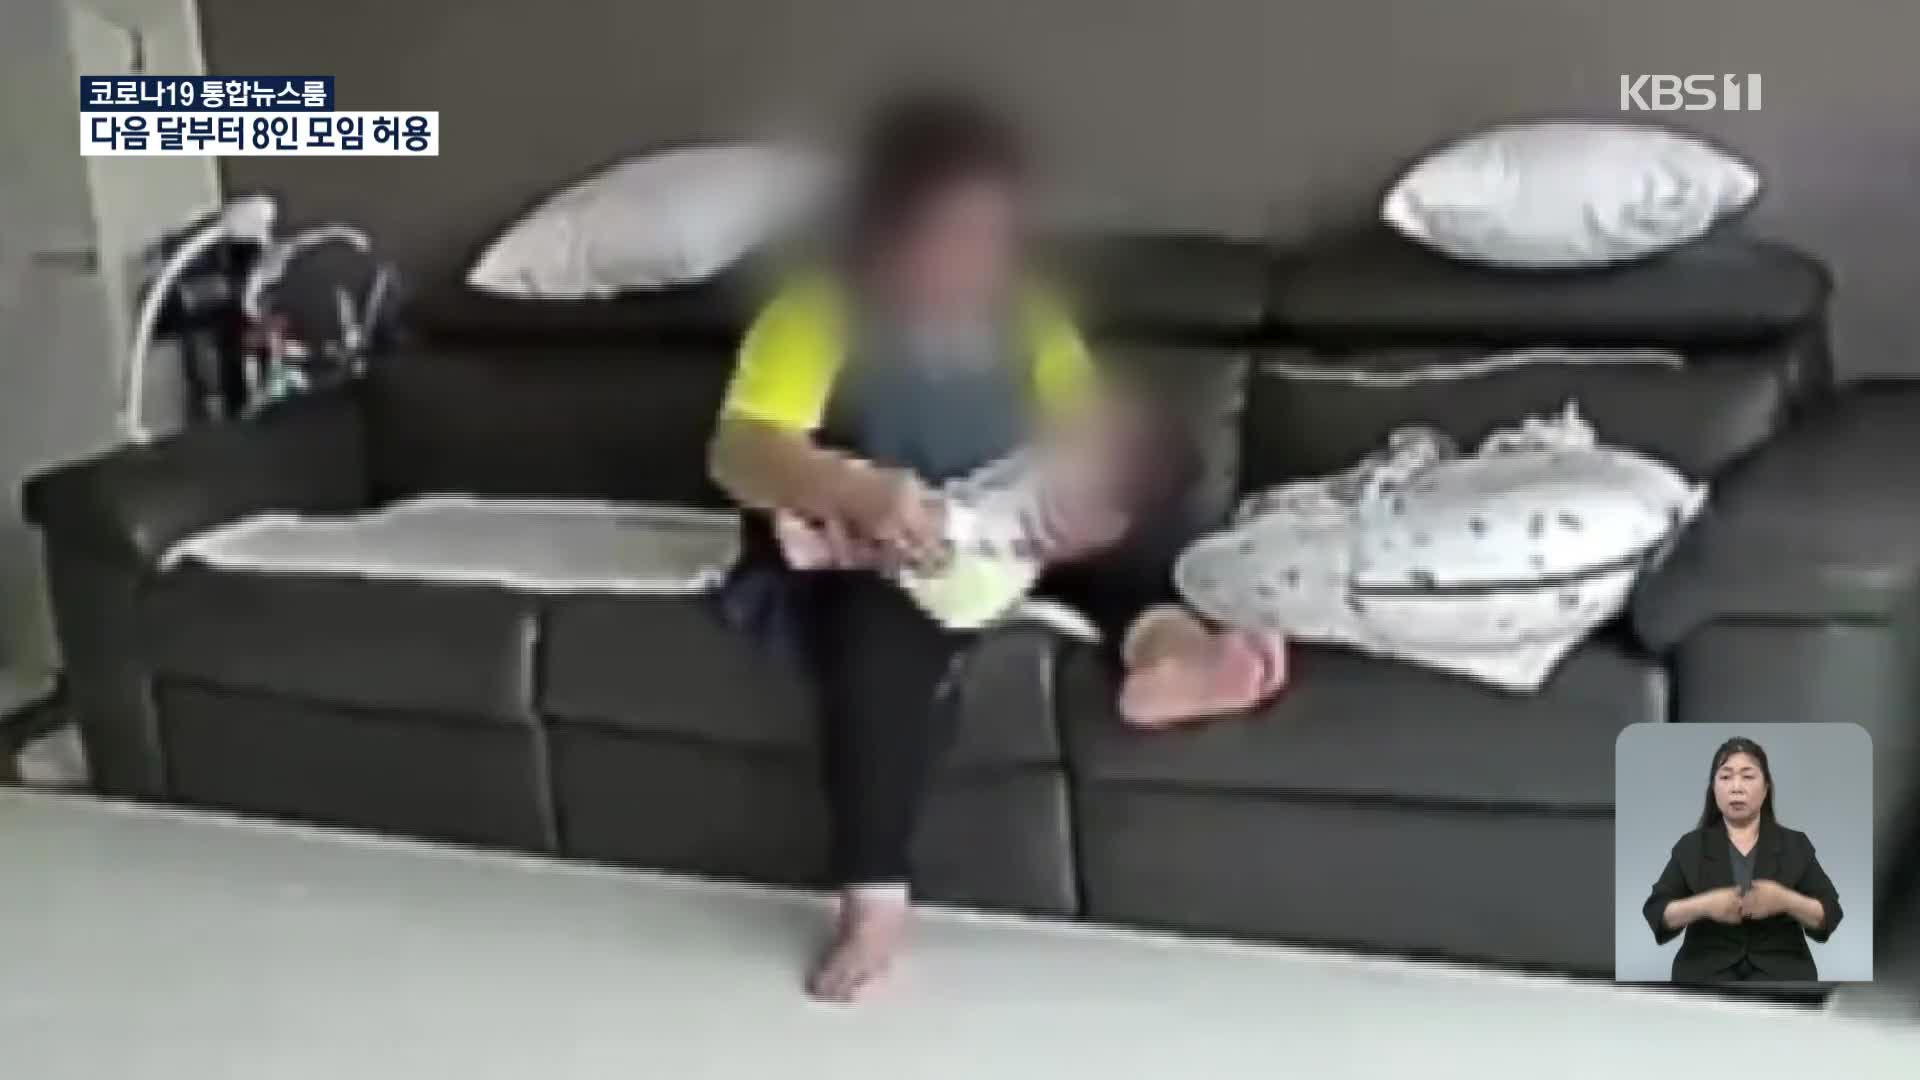 ‘베테랑’ 산후도우미라더니…CCTV에 또 잡힌 신생아 학대